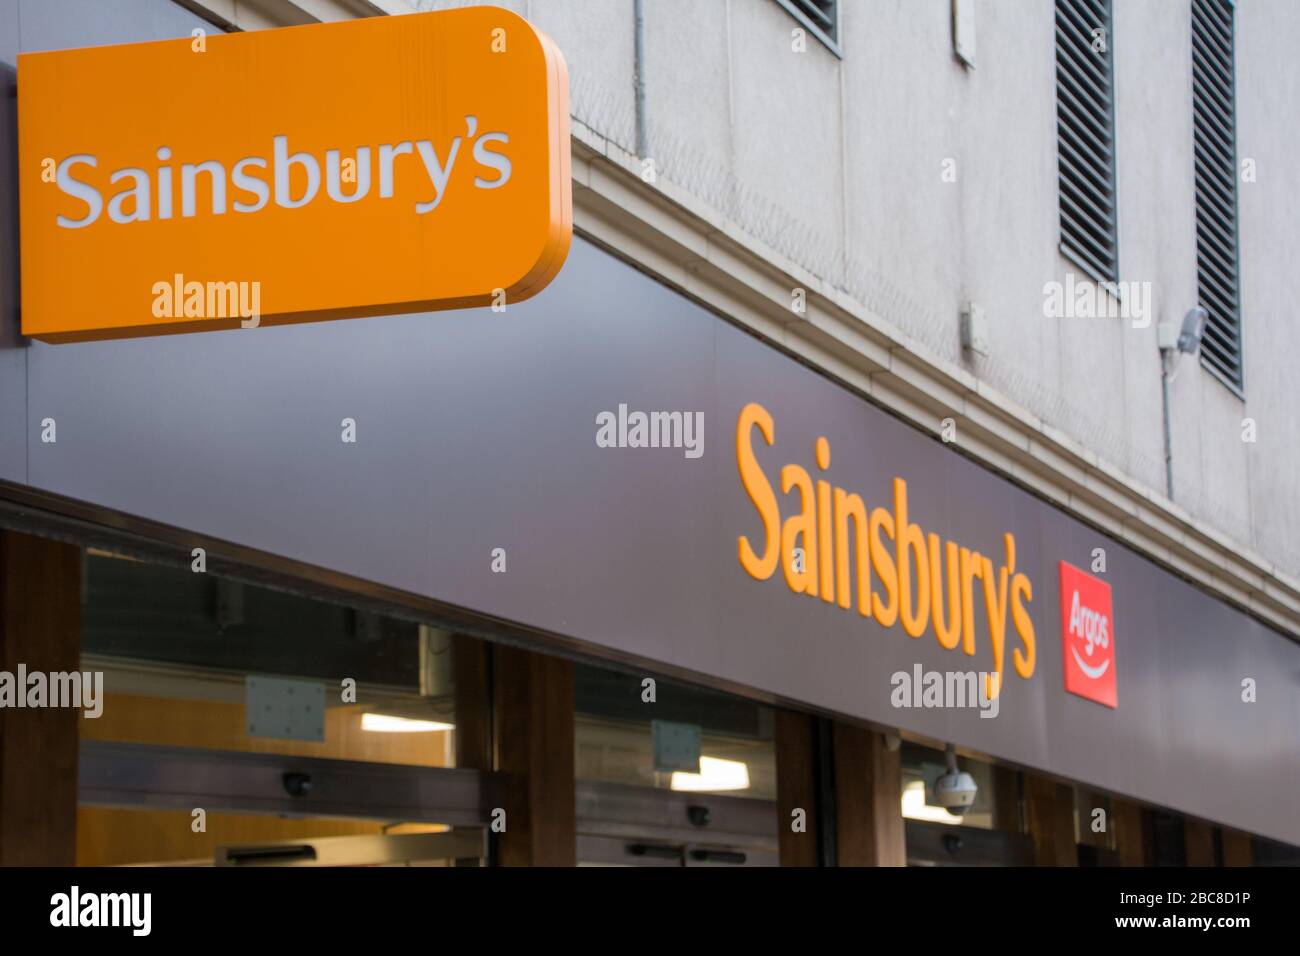 Il supermercato Sainsbury's con il logo Argos sulla segnaletica esterna - Londra Foto Stock